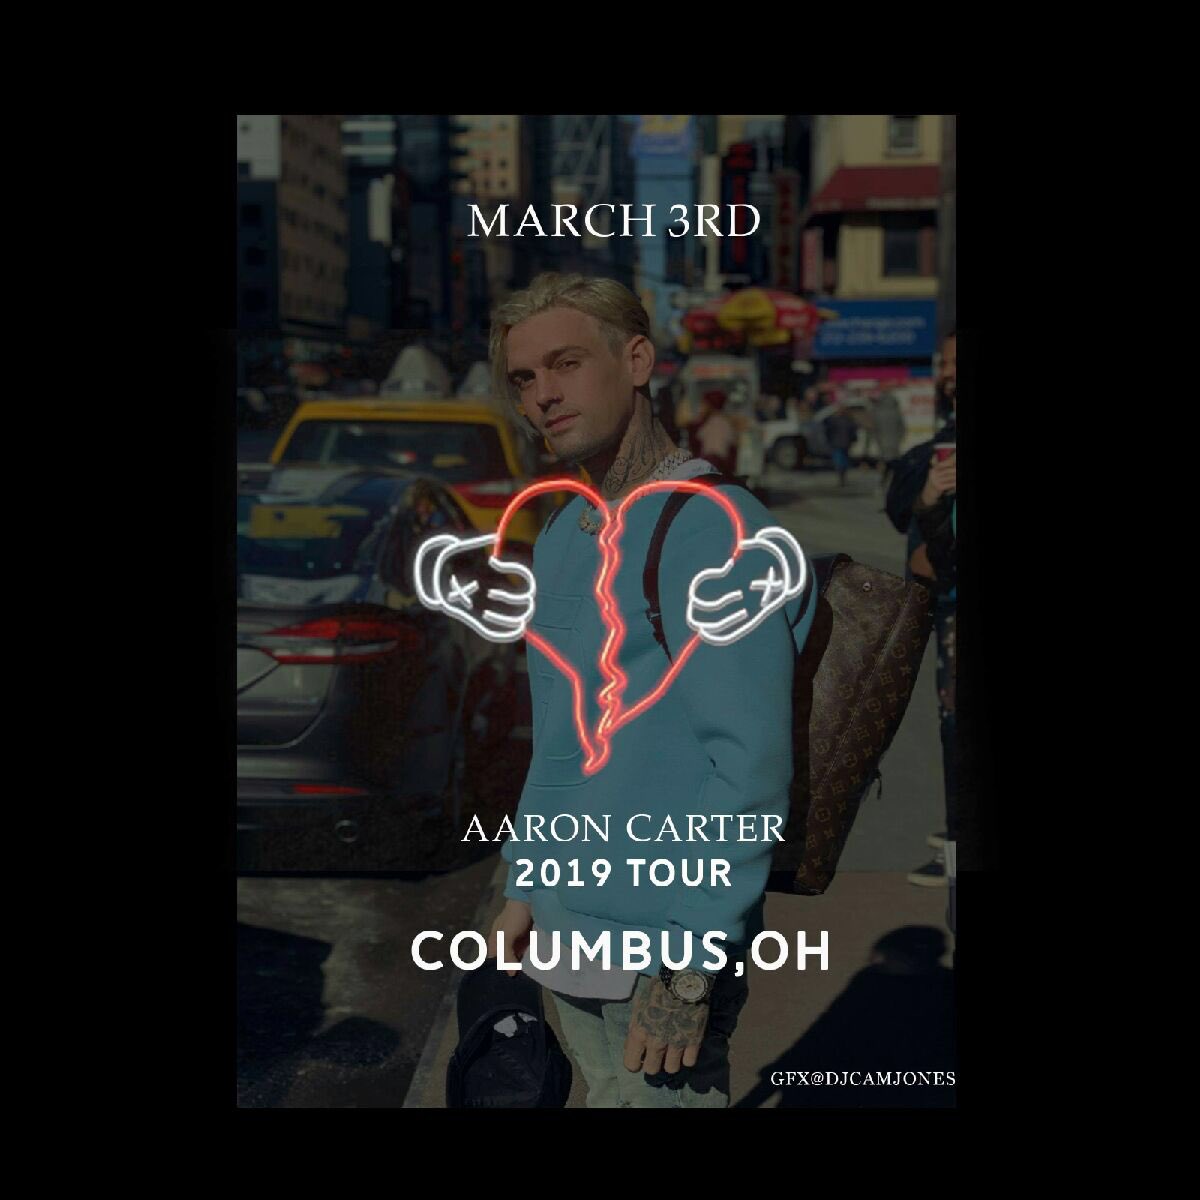 Columbus, OH - MARCH 3, 2019 •

#Columbus #Ohio #RumbaCafe #AaronsParty #AaronCarter #LøVë

TICKETS & VIP: aaroncarter.com